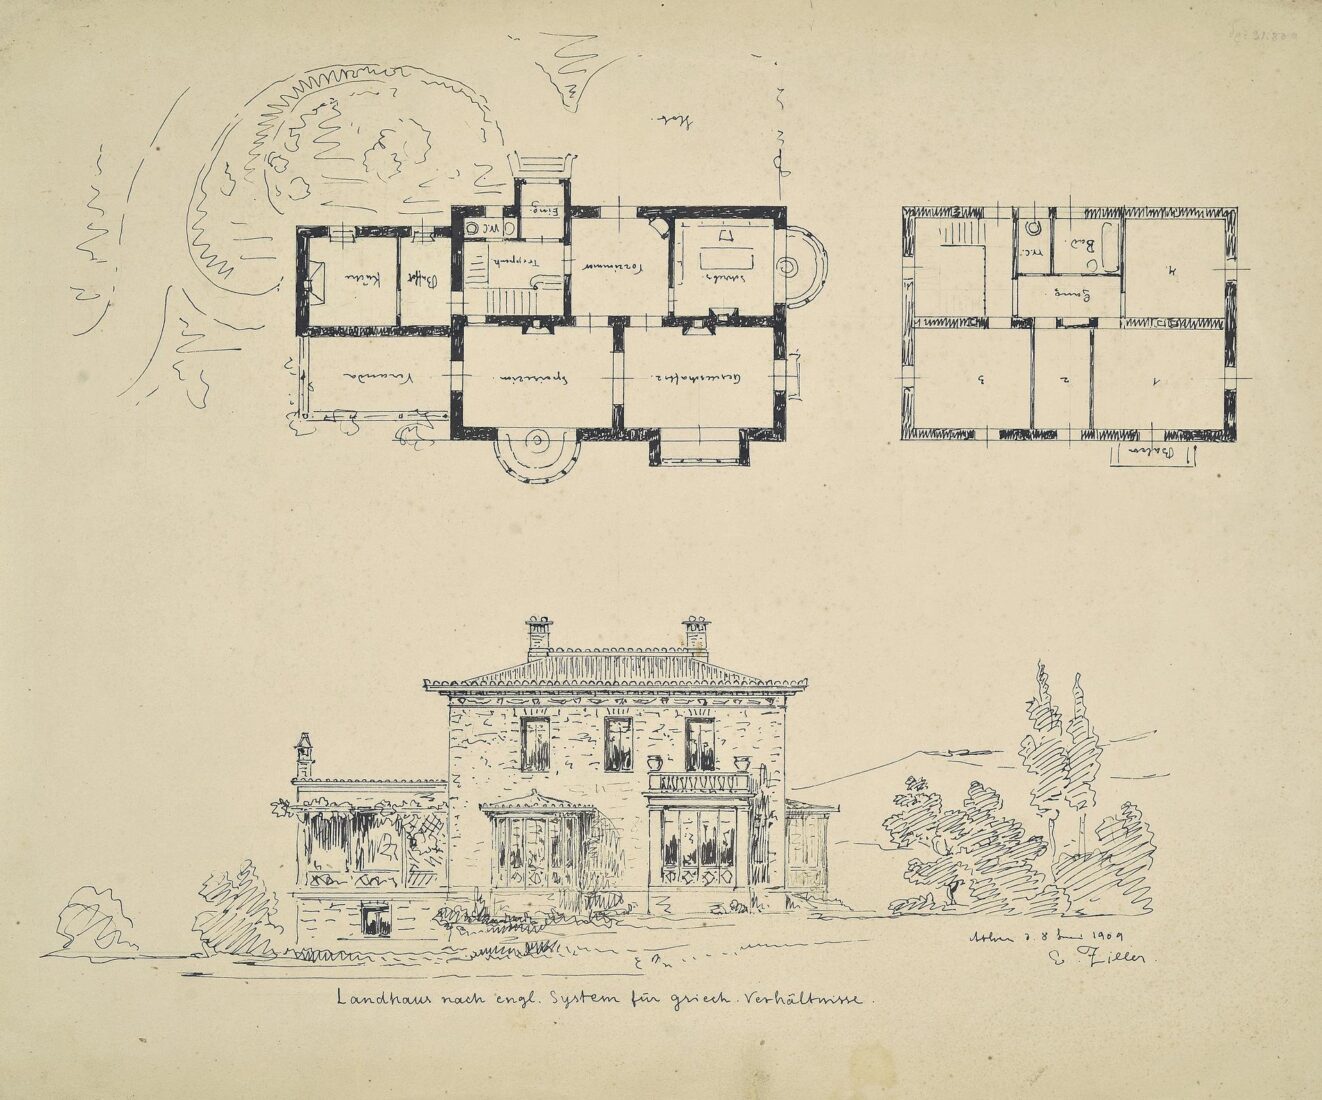 Εξοχική κατοικία αγγλικού τύπου για ελληνικές συνθήκες [cottage]  Κύρια όψη, κατόψεις - Ziller Ernst